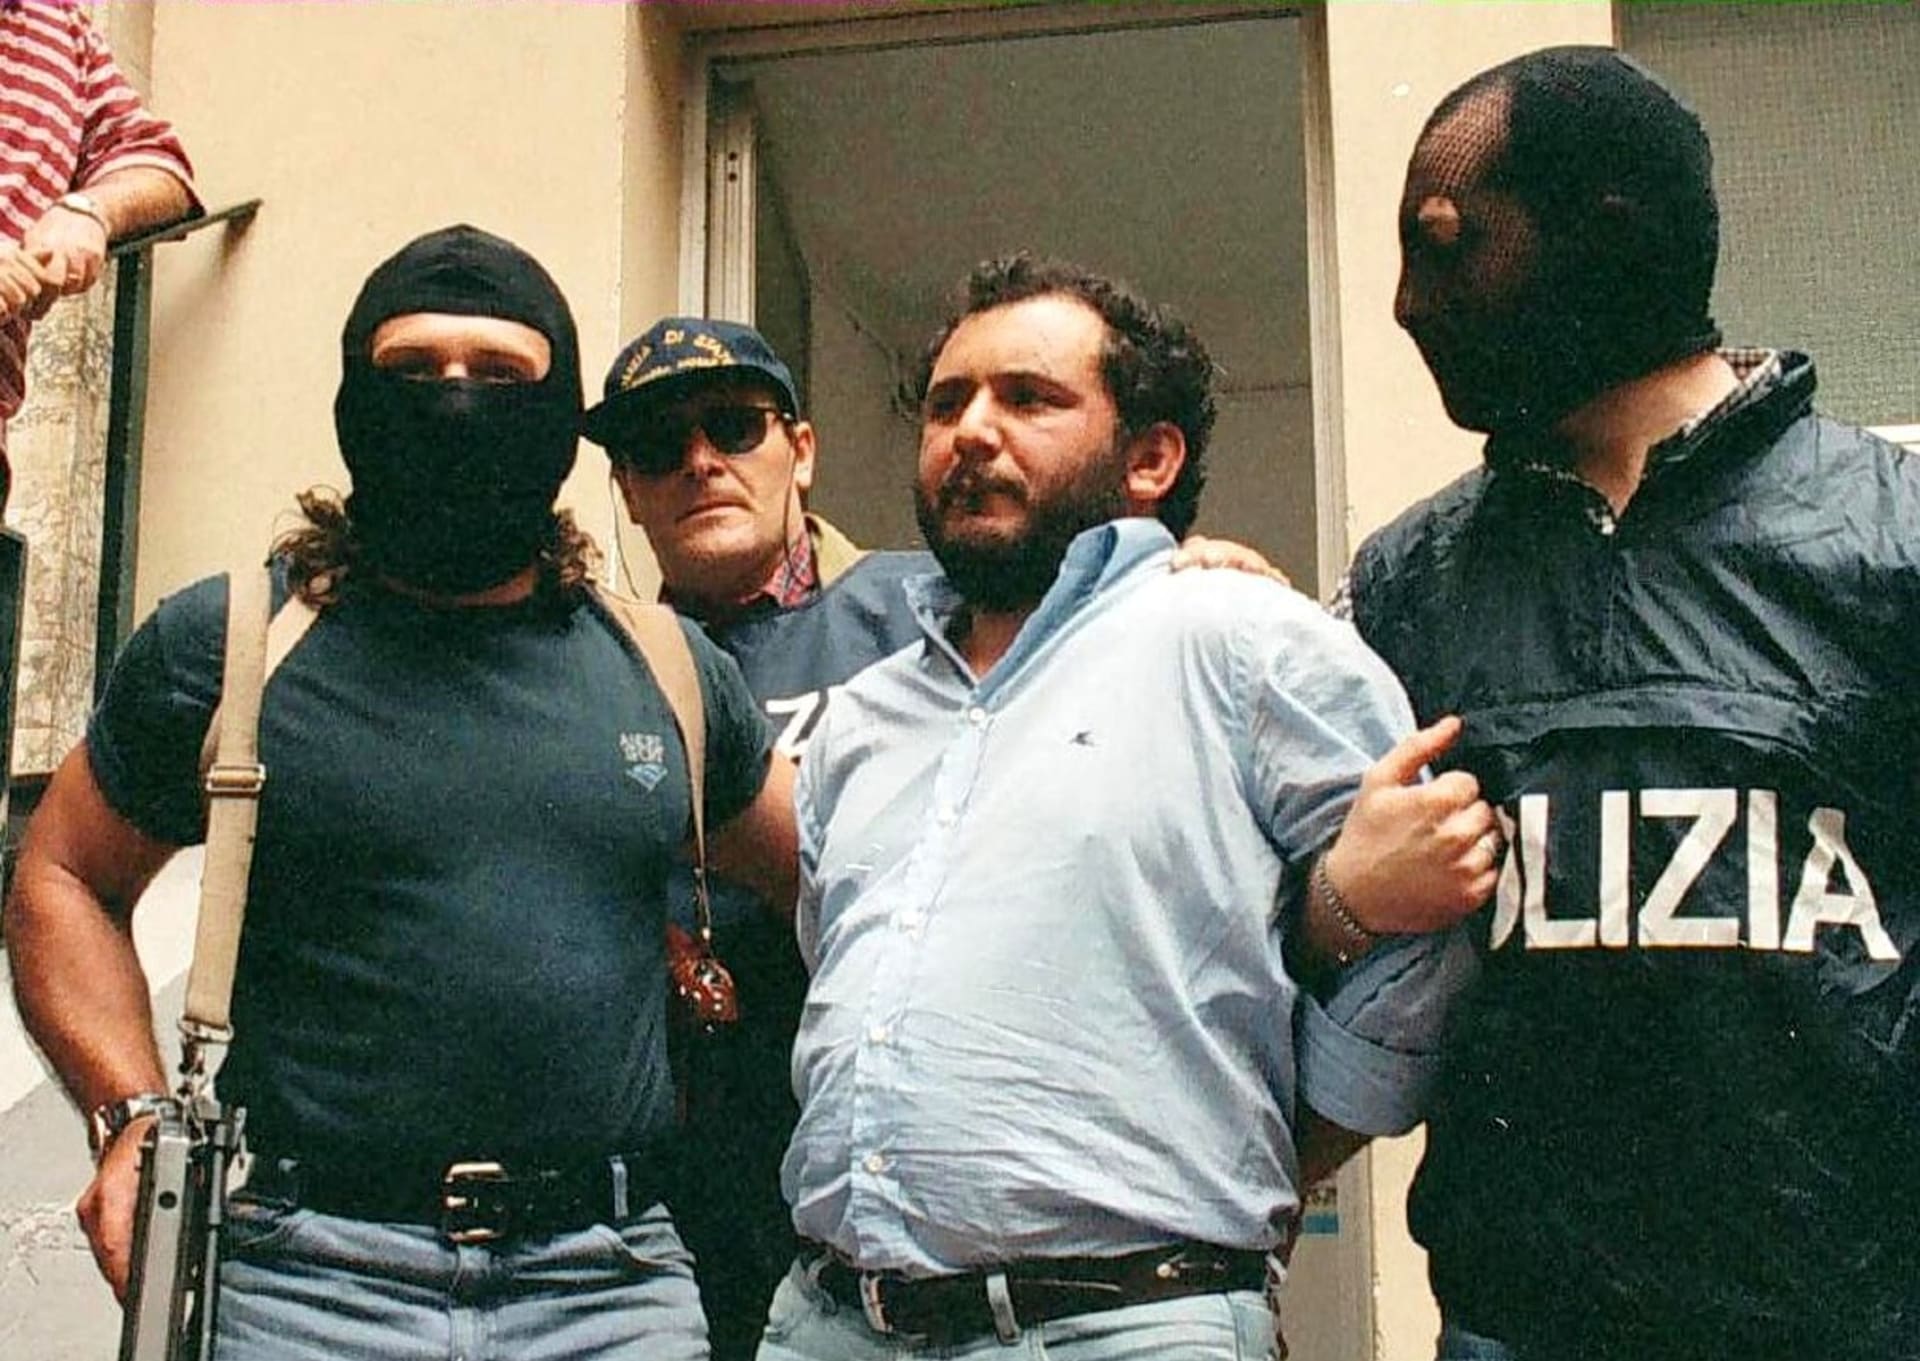 Mafiánský boss Giovanni Brusca v roce 1996, kdy je odváděn z policejního výslechu